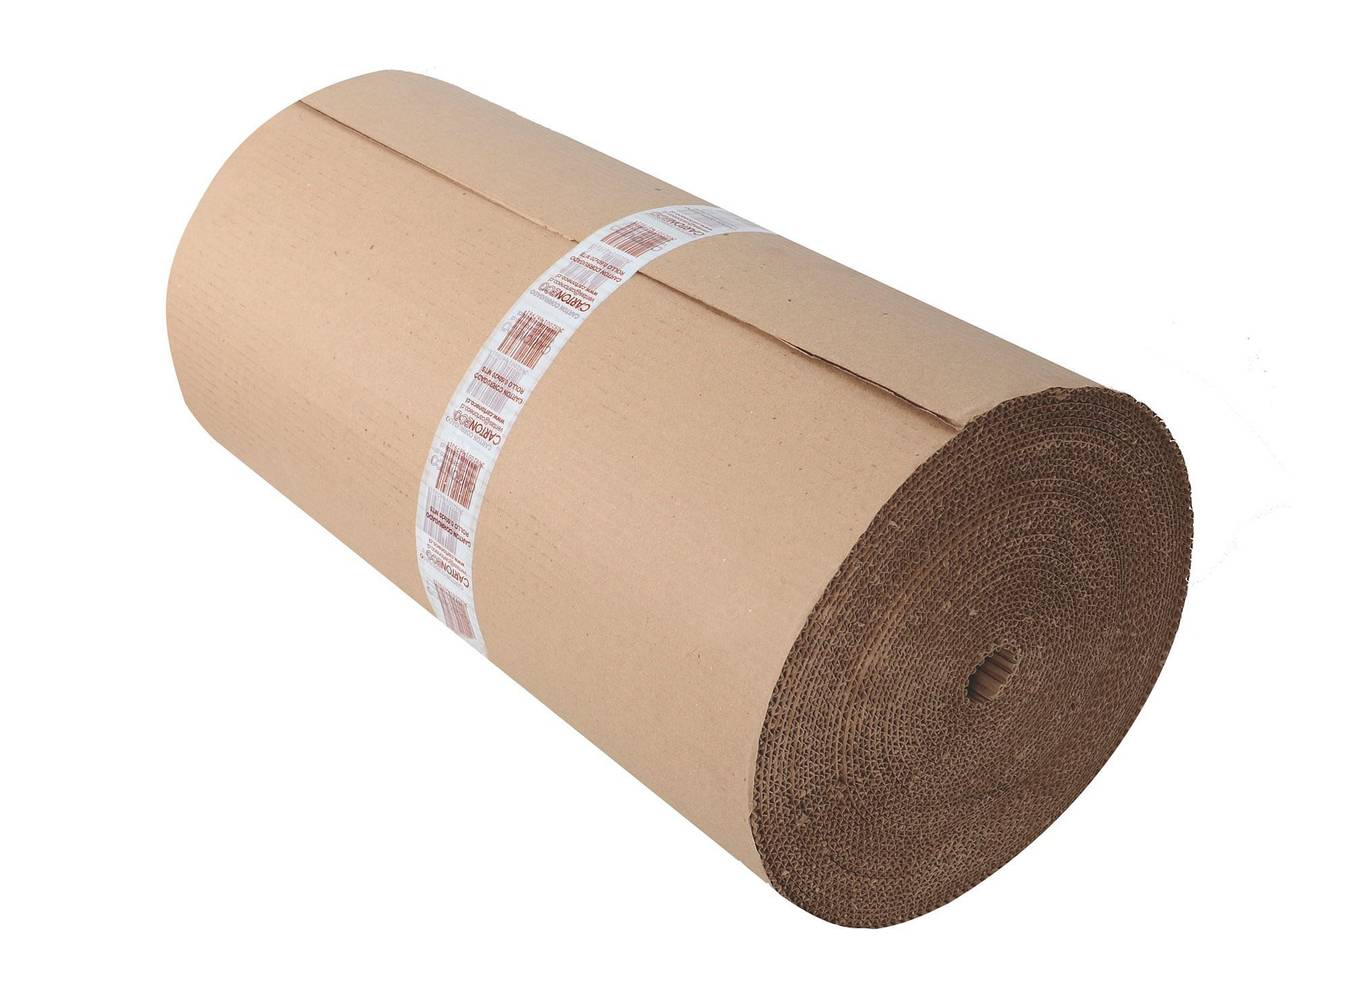 Cartoneco rollo cartón currugado (60 cm x 20 m)